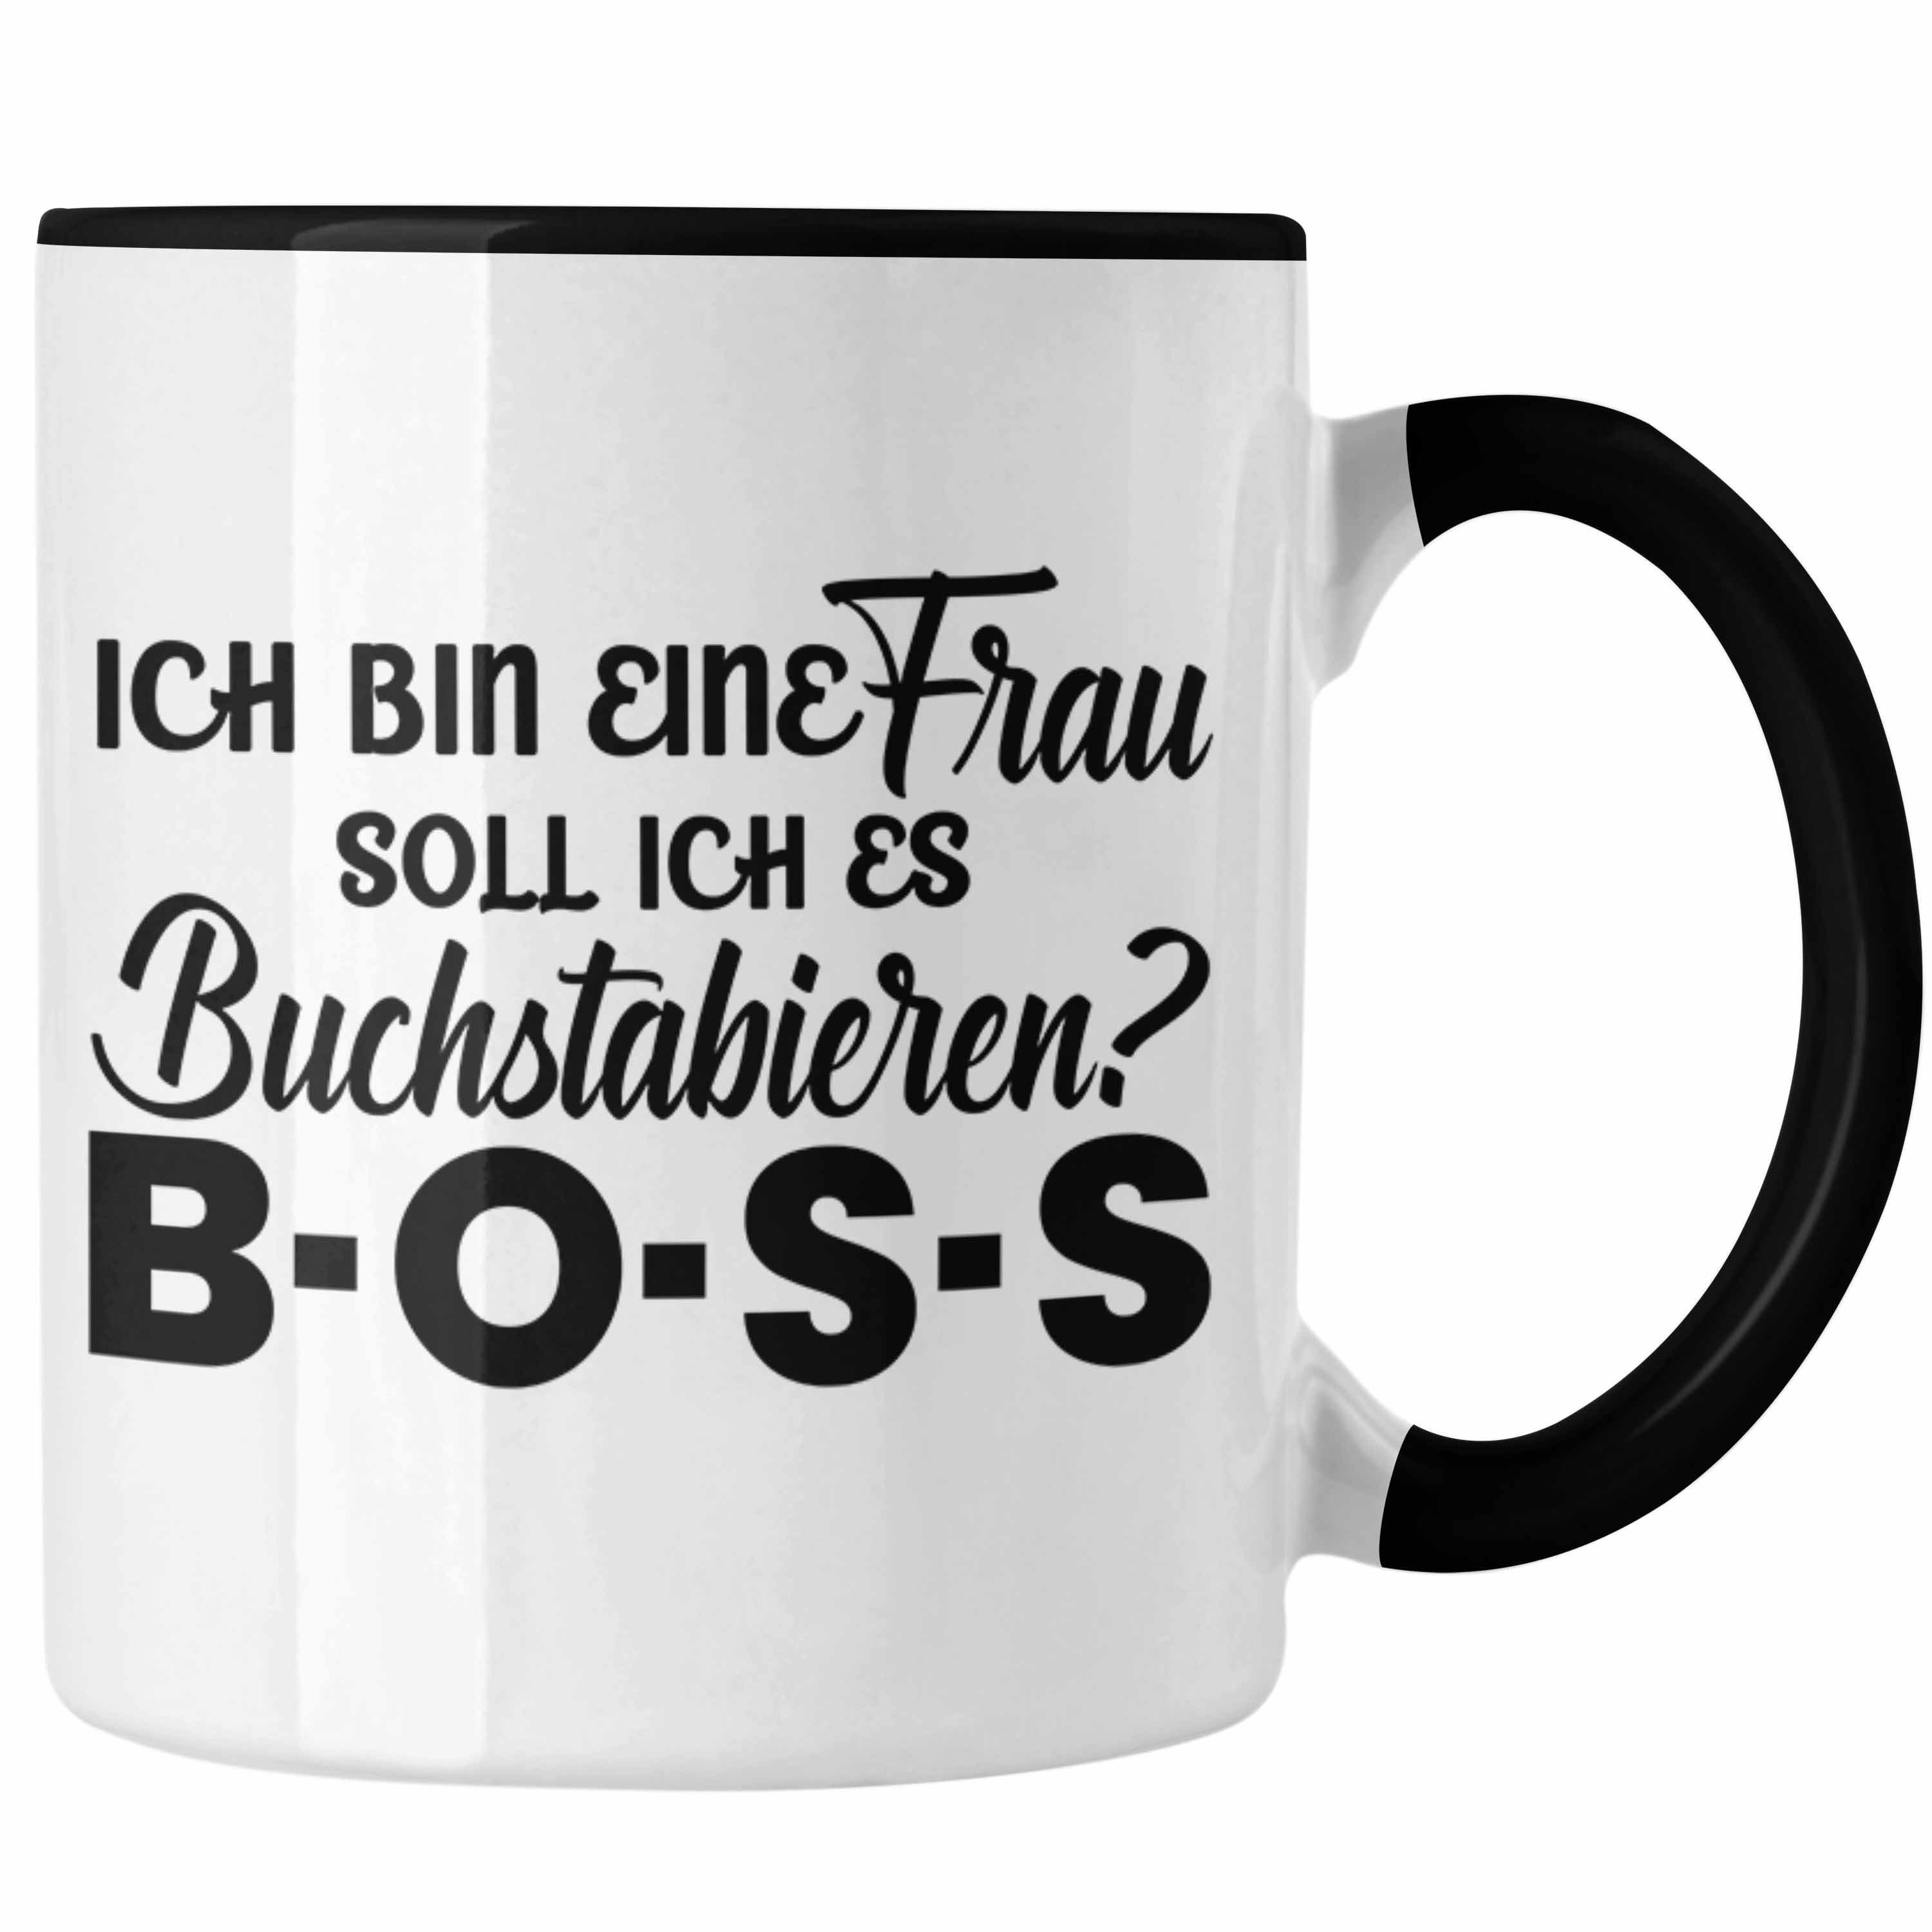 Trendation Tasse Trendation - Frauen Tasse Geschenk Boss Tasse mit Spruch für Frauen Frauentag Starke Frau Schwarz